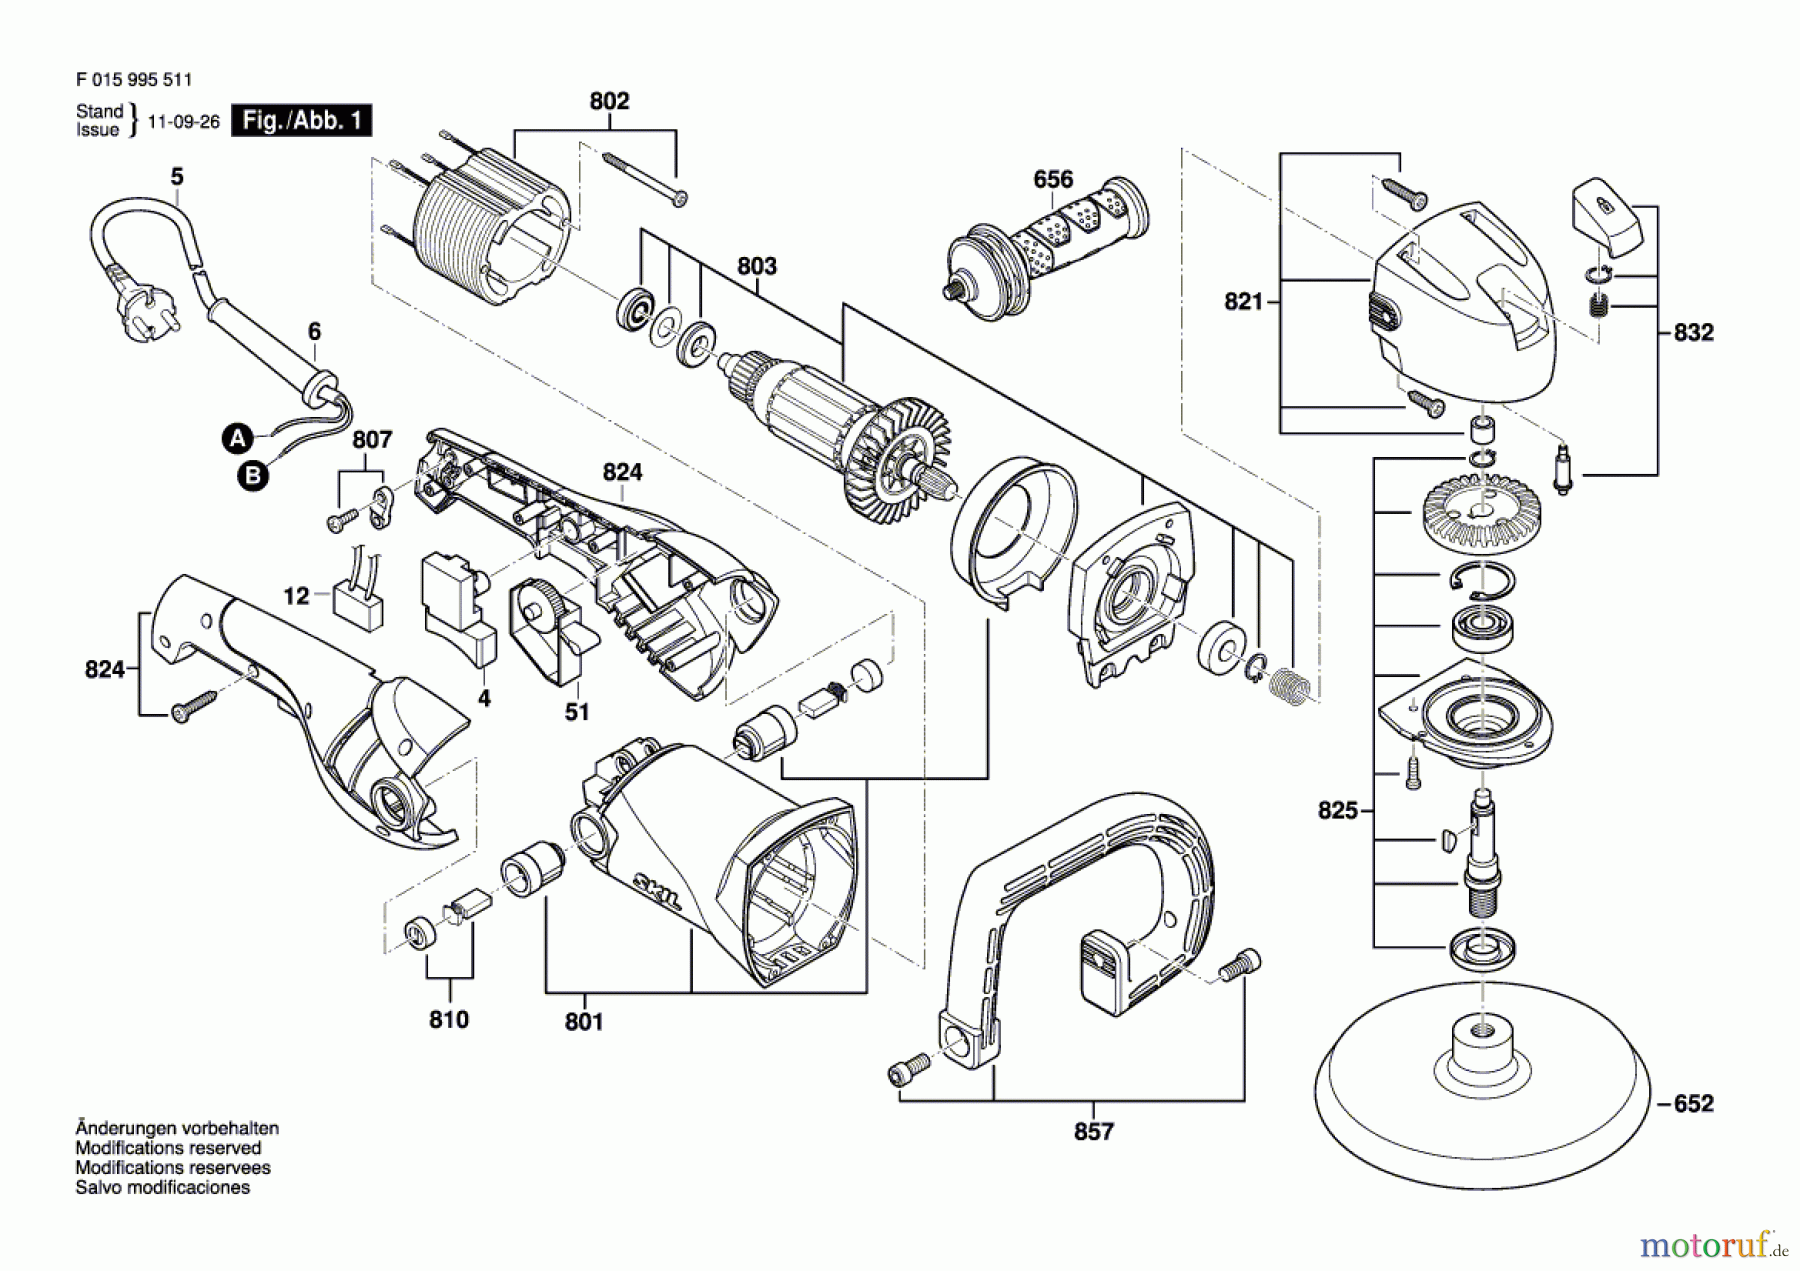  Bosch Werkzeug Winkelpolierer 9955 Seite 1